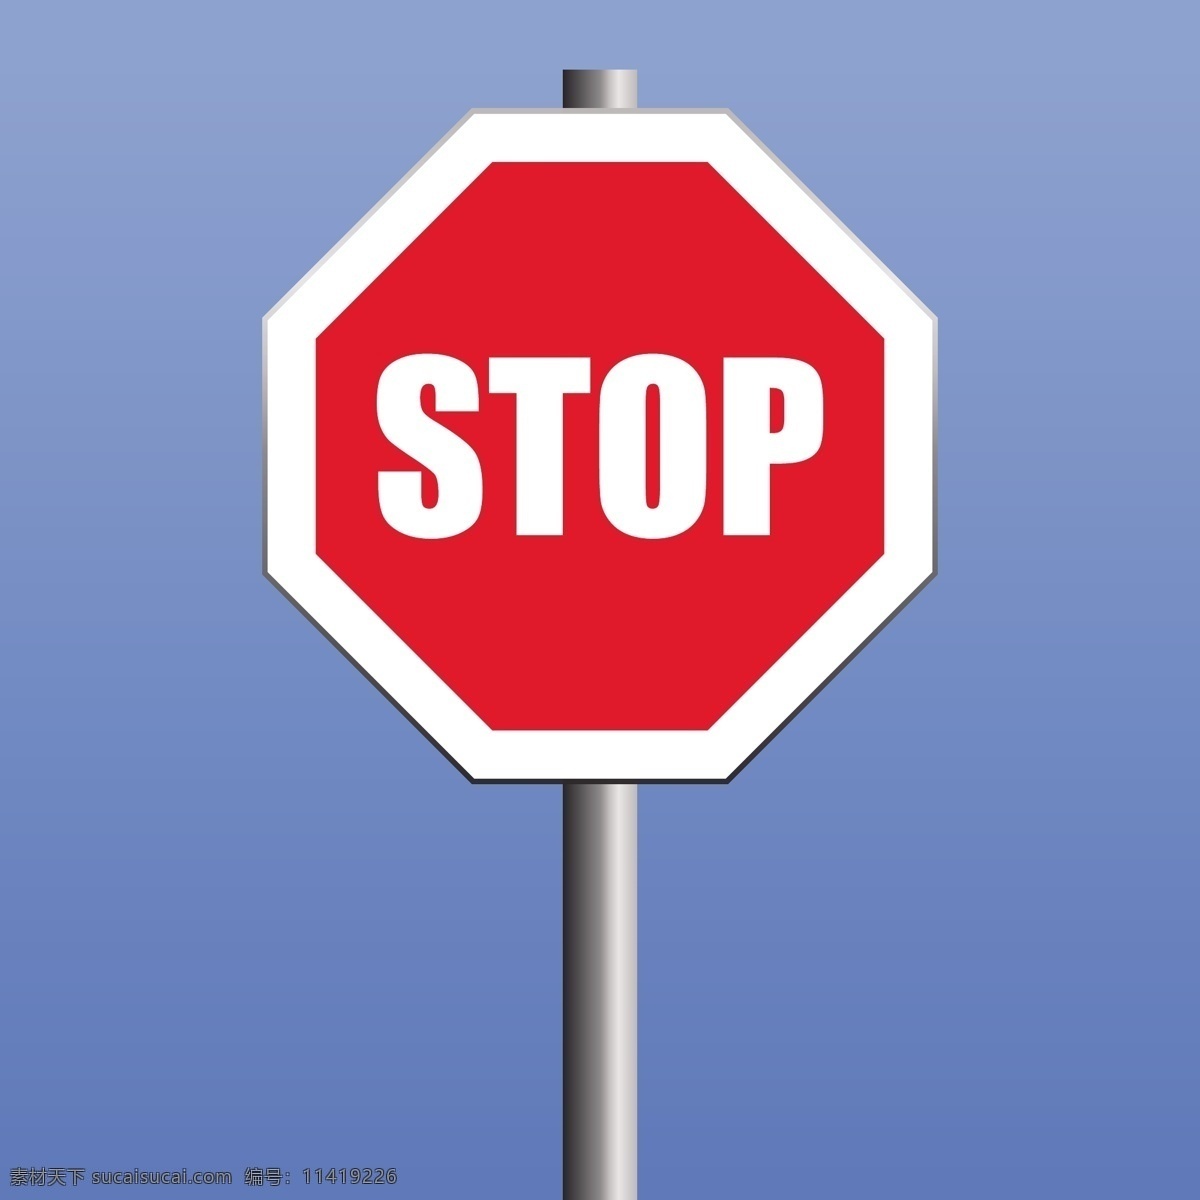 路标 指示图标 指示 stop 禁止 指向 公路 交警 消防 矢量 矢量其他 矢量素材 广告 室外广告设计